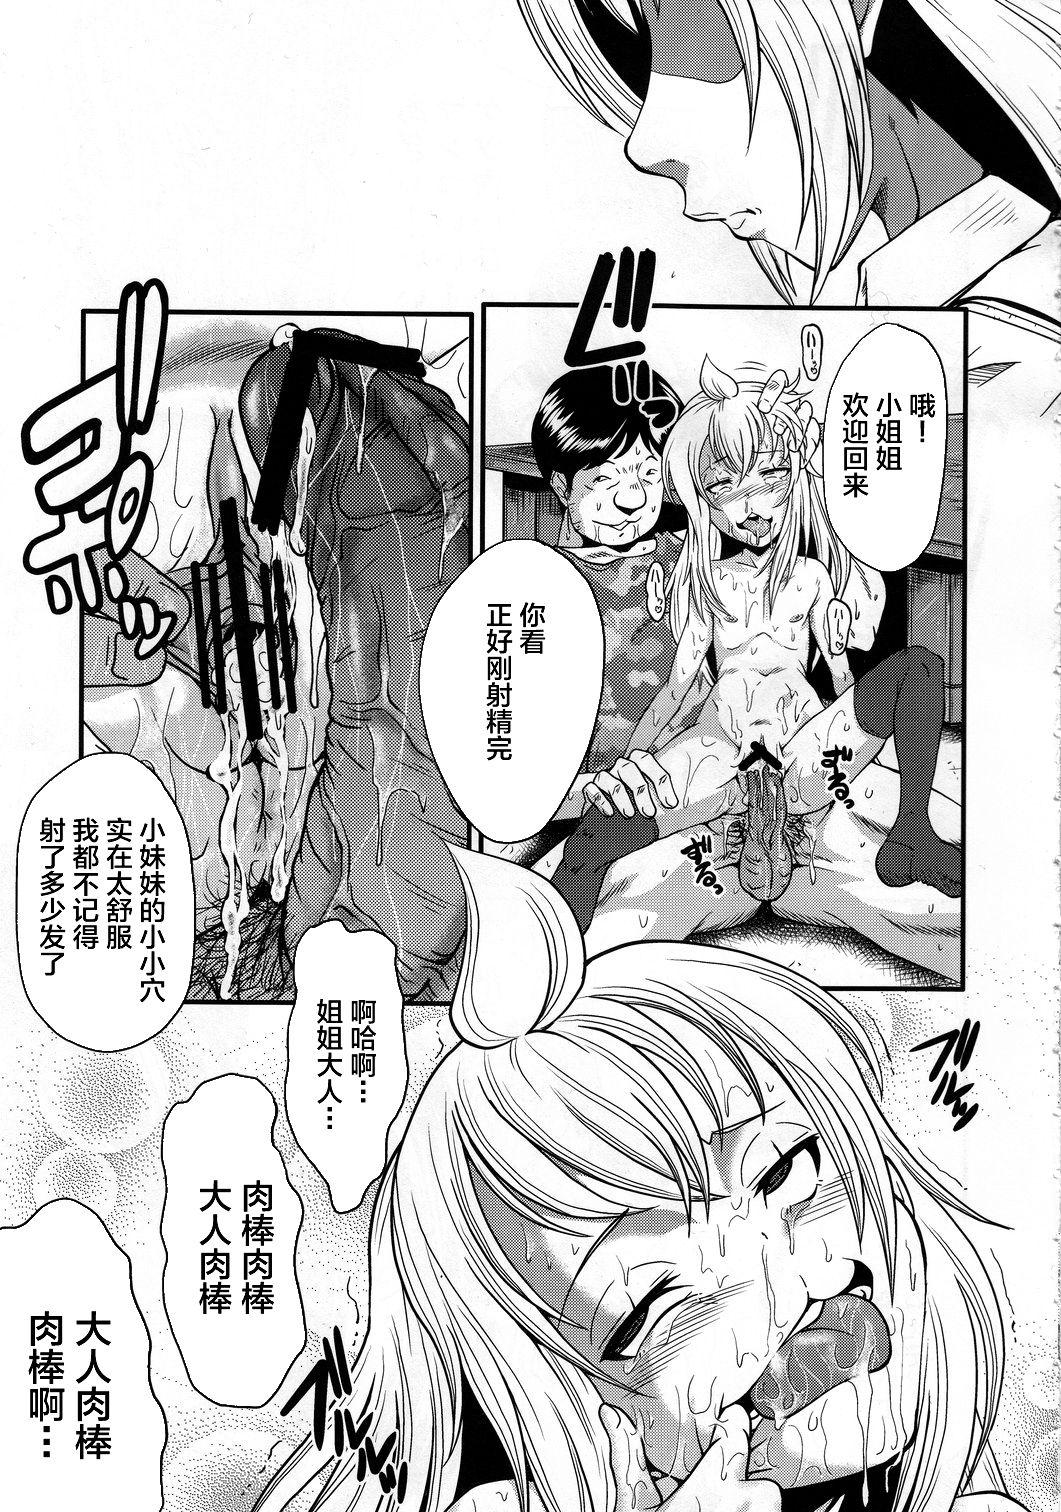 Super Urabambi Vol. 41 Minami-ke - Minami-ke Horny Sluts - Page 6